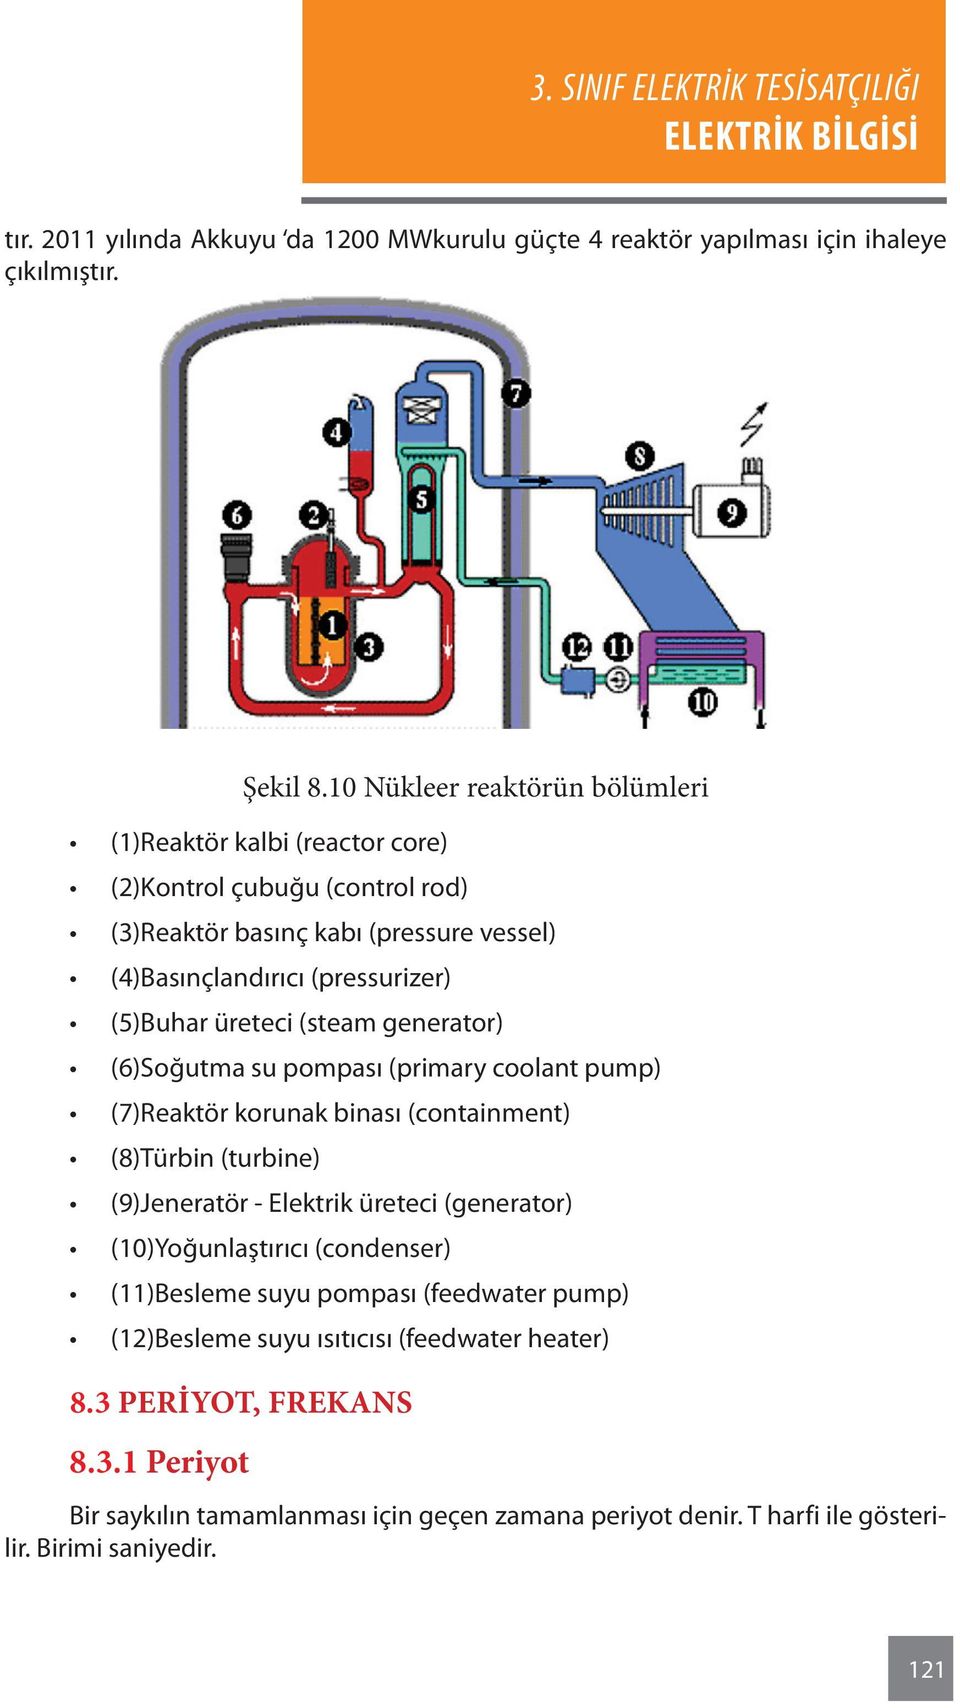 üreteci (steam generator) (6)Soğutma su pompası (primary coolant pump) (7)Reaktör korunak binası (containment) (8)Türbin (turbine) (9)Jeneratör - Elektrik üreteci (generator)